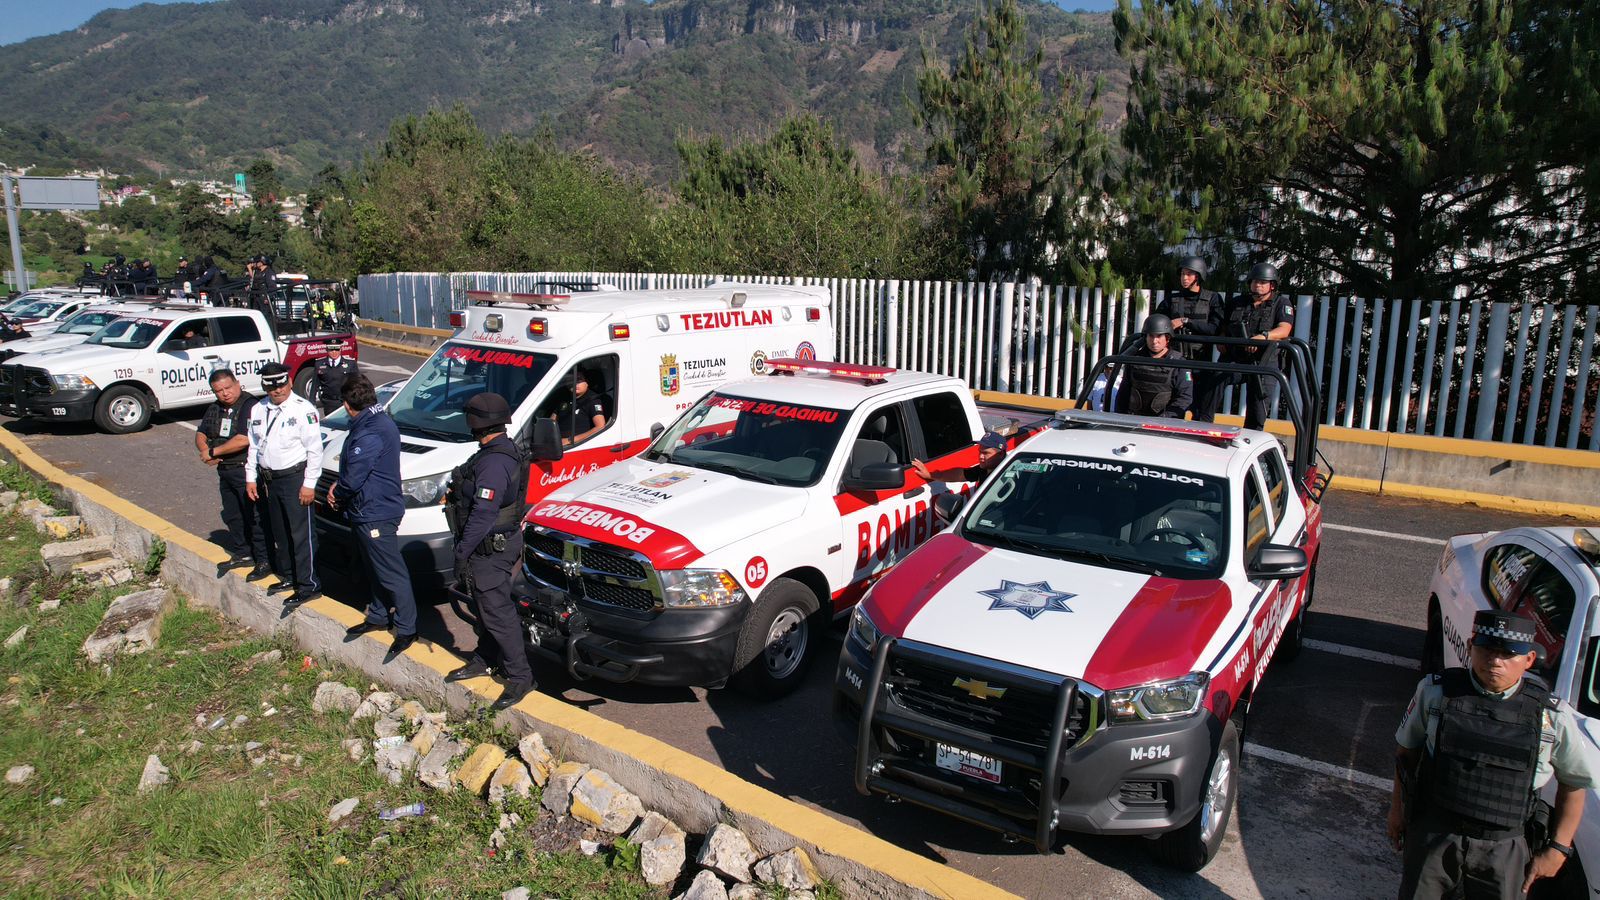 Seguridad Pública de Teziutlán inicia operativos con la Policía Estatal en la pista a Puebla